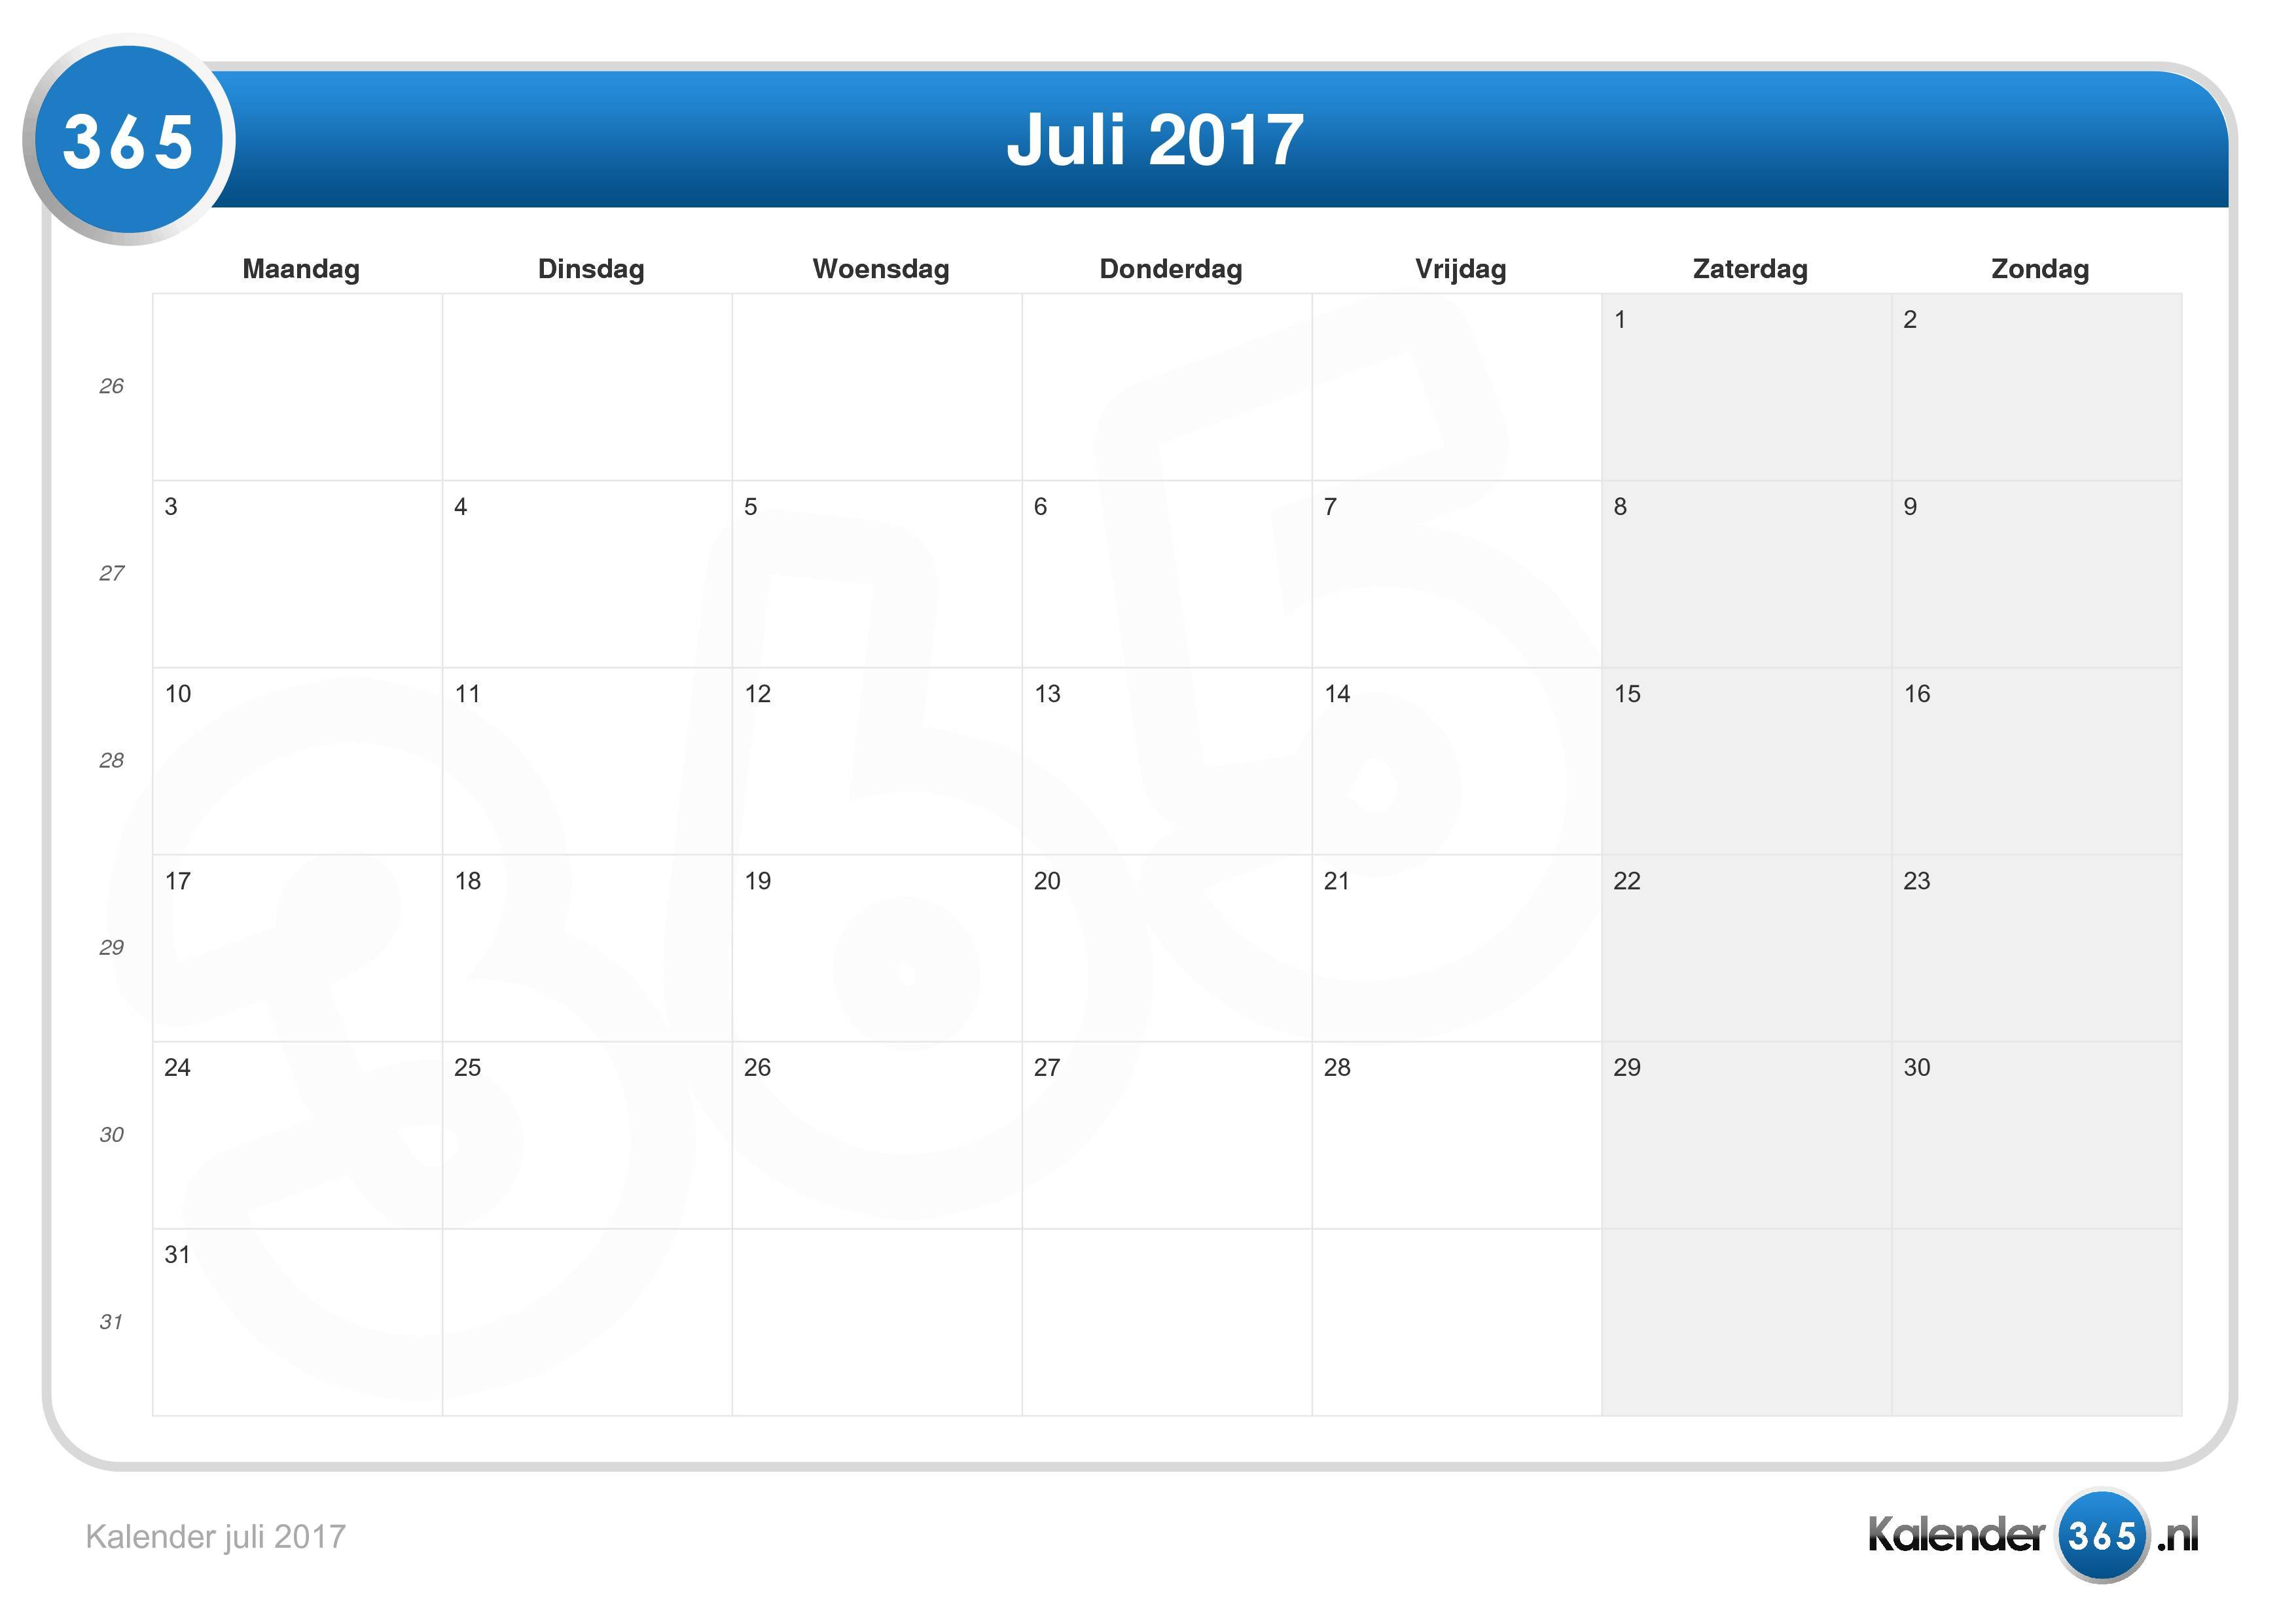 Bedienen dood cilinder Kalender juli 2017